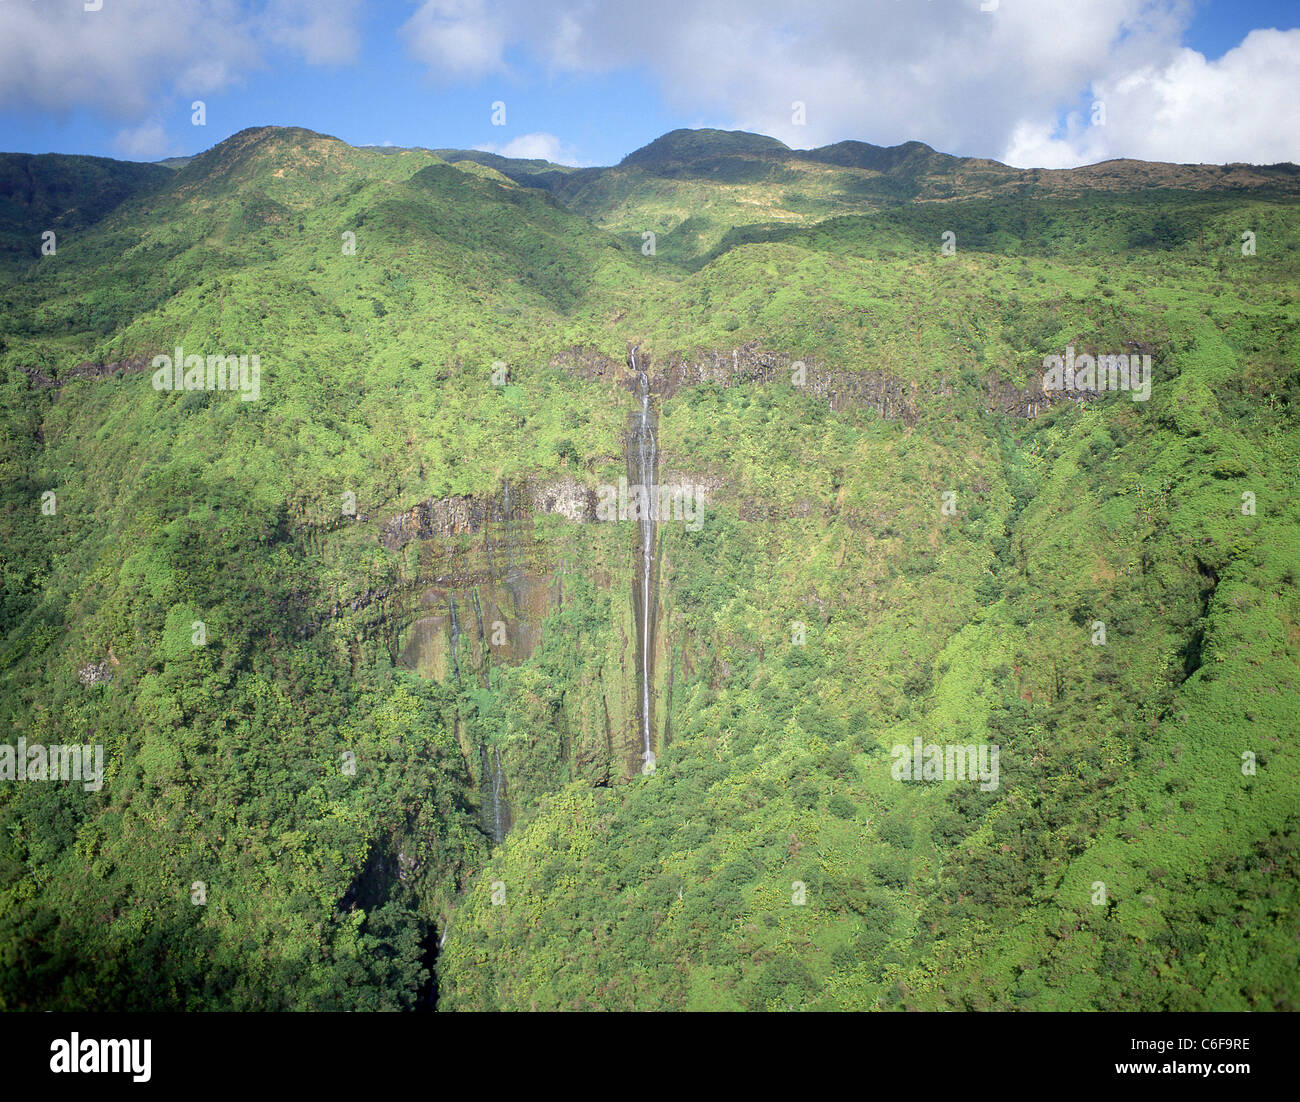 Vista aérea de la cascada, el Parque Nacional de Haleakala, Maui, Hawai, Estados Unidos de América Foto de stock